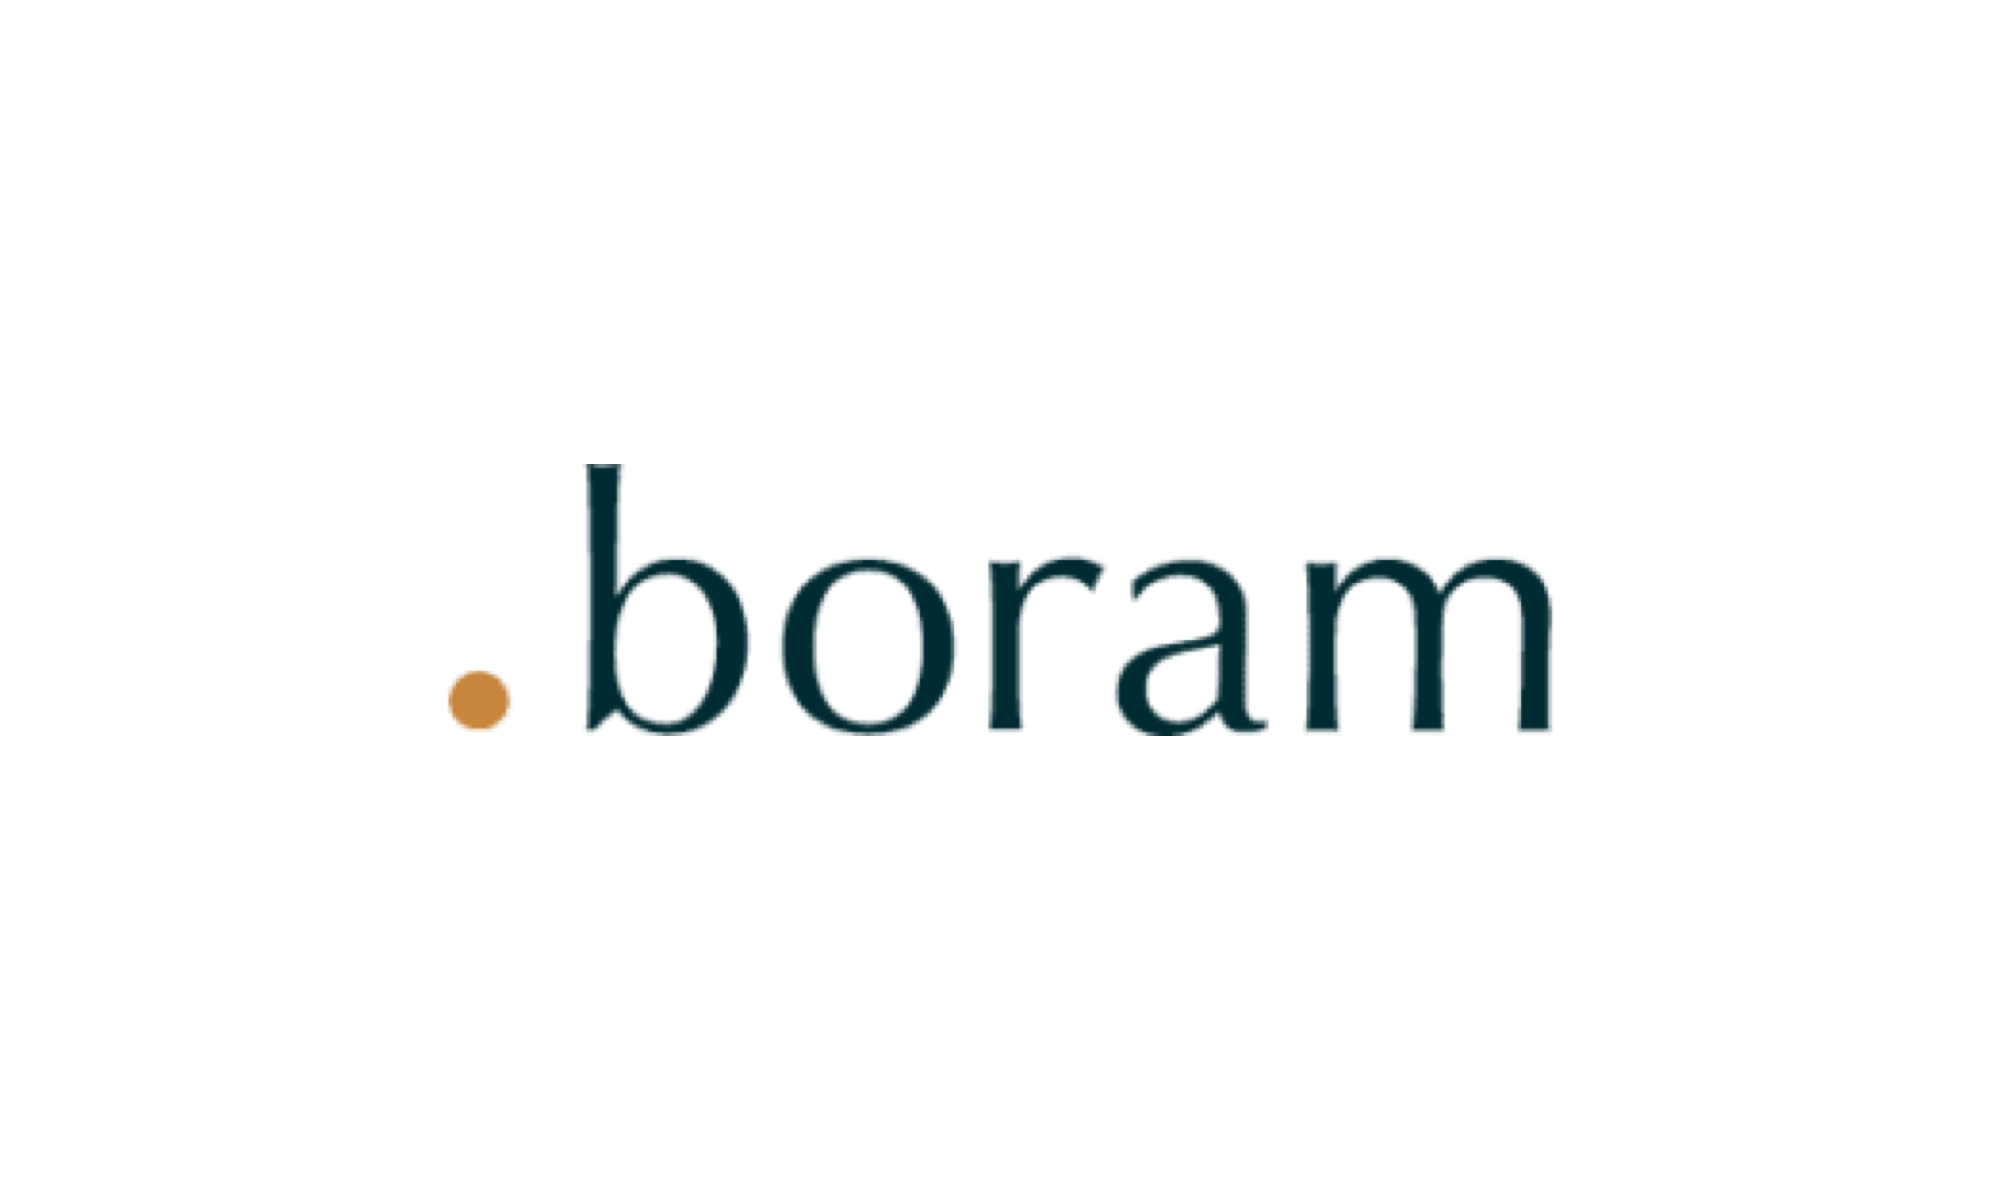 Boram